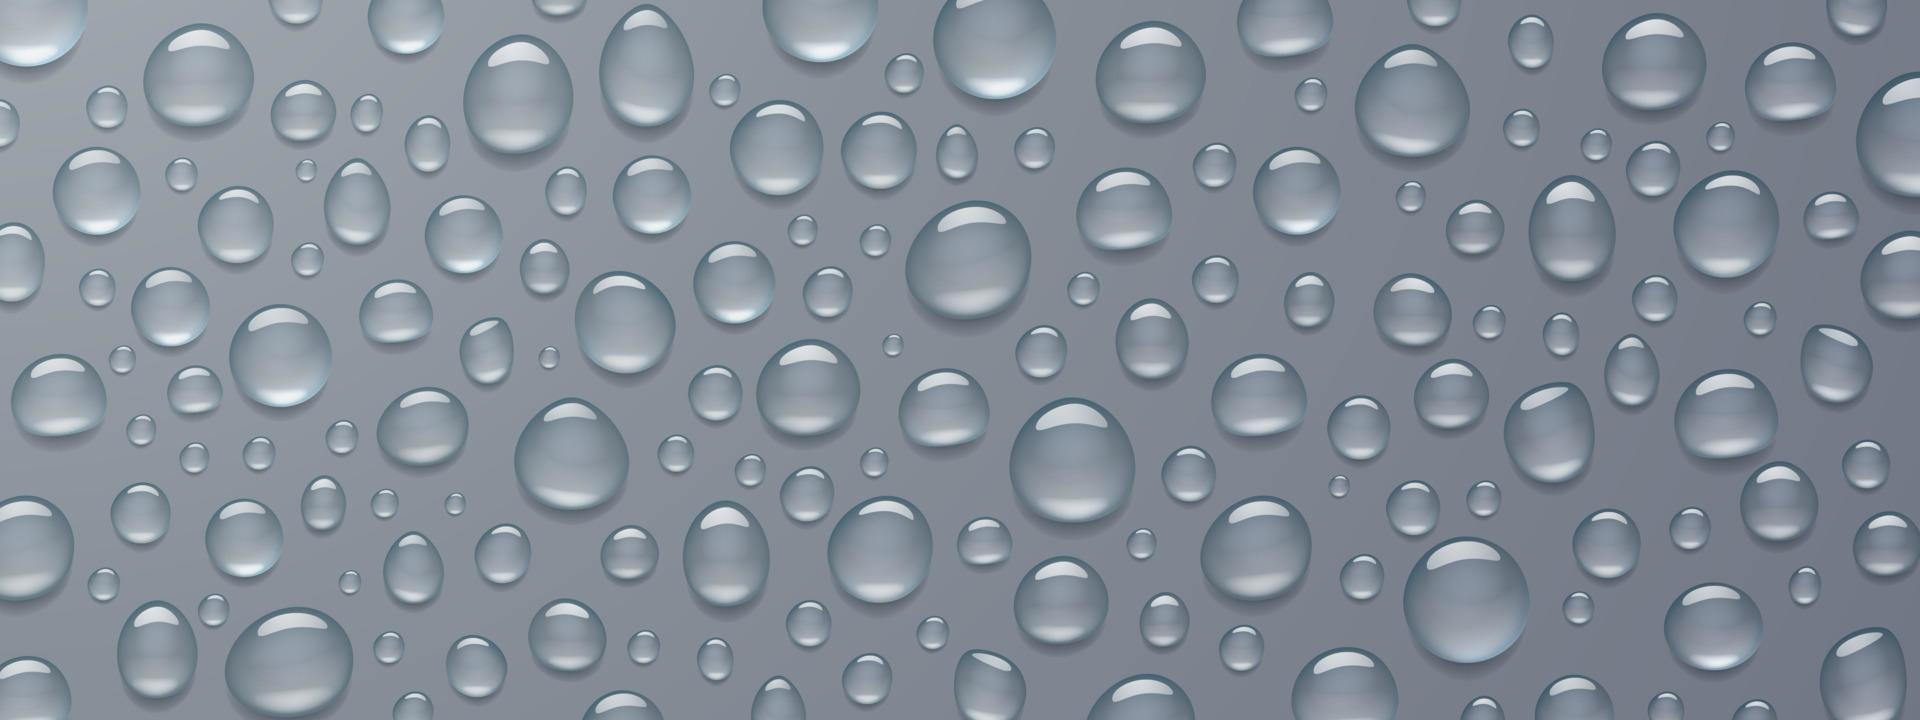 textur av vatten droppar på grå bakgrund vektor